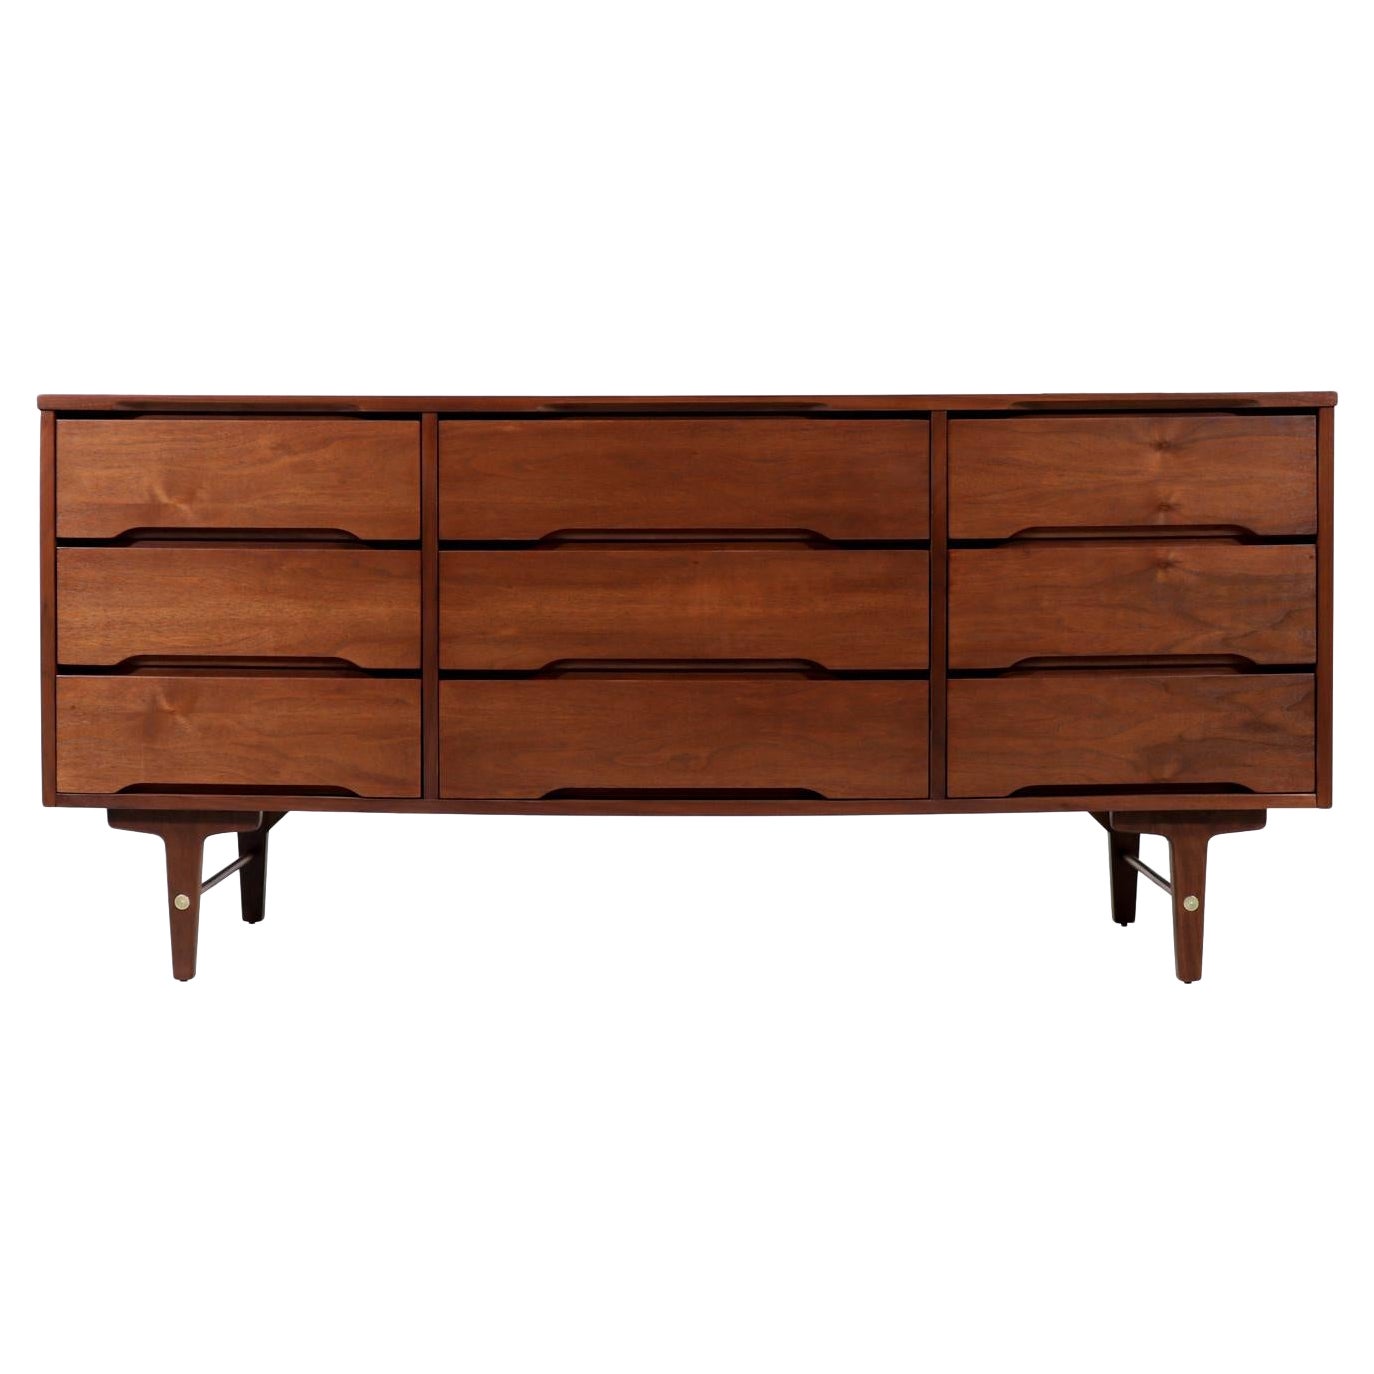 Mid-Century Modern Walnut 9-Drawer Dresser by Stanley Furniture